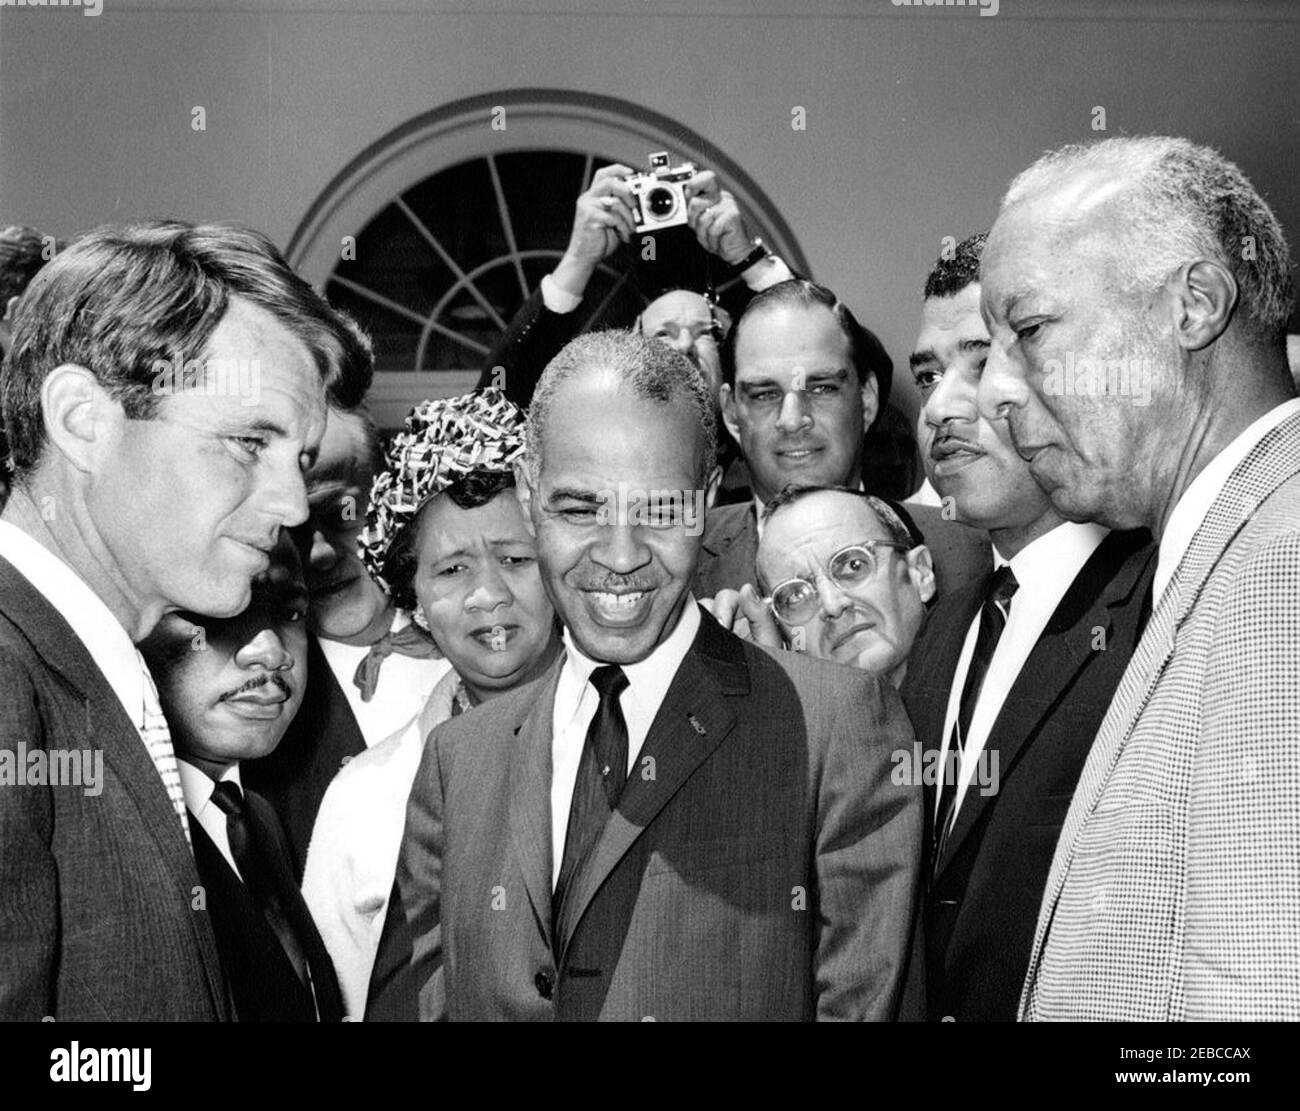 Reunión con Robert F. Kennedy (RFK), Martin Luther King, Jr. (MLK), y Burke Marshall, 10:30AM. El Fiscal General Robert F. Kennedy se reúne con líderes de derechos civiles en el Jardín de las Rosas de la Casa Blanca, Washington, D.C., de izquierda a derecha: El Fiscal General Kennedy; el Presidente de la Conferencia de Liderazgo Cristiano del Sur (SCLC), Dr. Martin Luther King, Jr. (Parcialmente oculto); Presidente del Consejo Nacional de mujeres Negras, Dorothy Height; Secretario Ejecutivo de la Asociación Nacional para el avance de los coloreados (NAACP), Roy Wilkins; hombre no identificado (delante); abogado James H. Sch Foto de stock